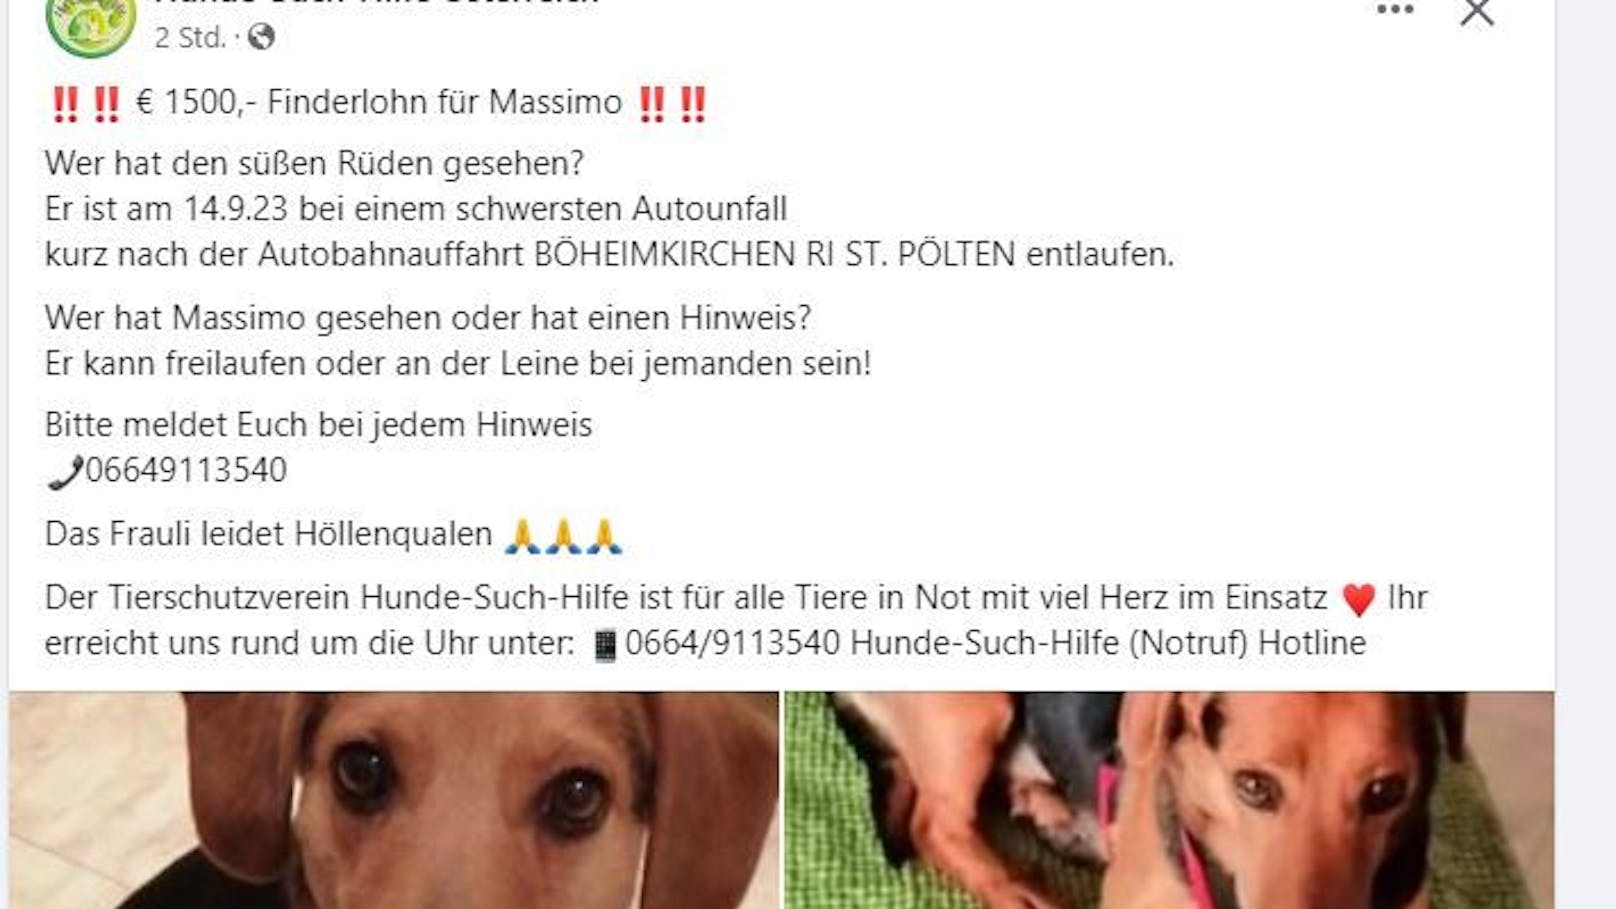 Der Verein "Hunde-Such-Hilfe-Österreich" hilft der Besitzerin bei der Suche.